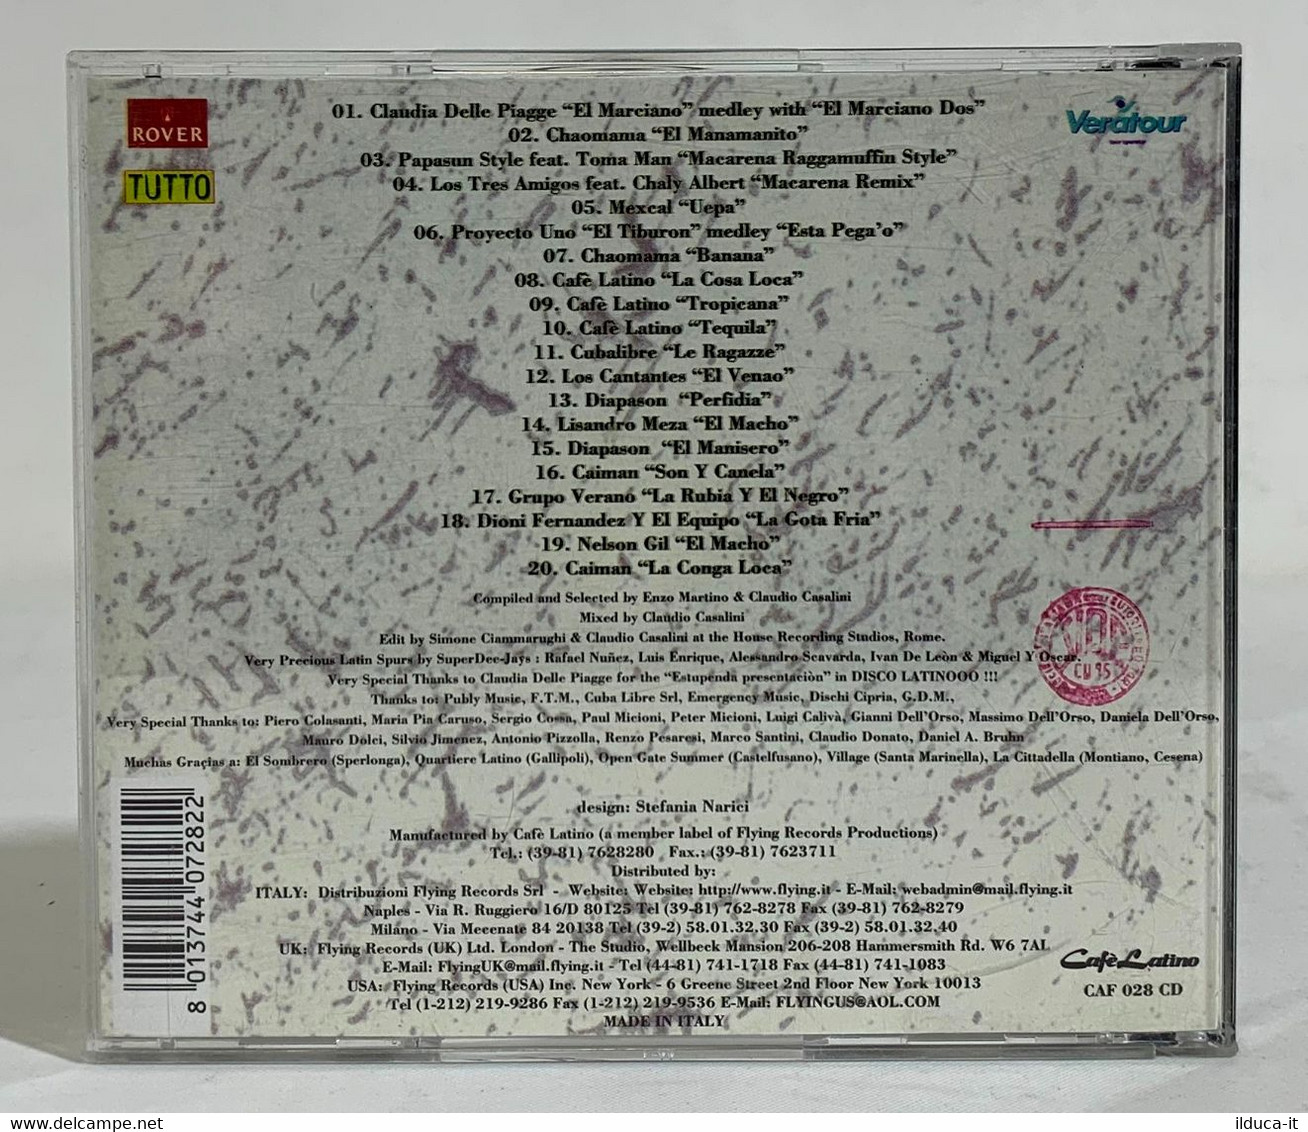 I102388 CD - Claudio Casalini - Disco Latino Dos - Tutto 1995 - Sonstige - Spanische Musik